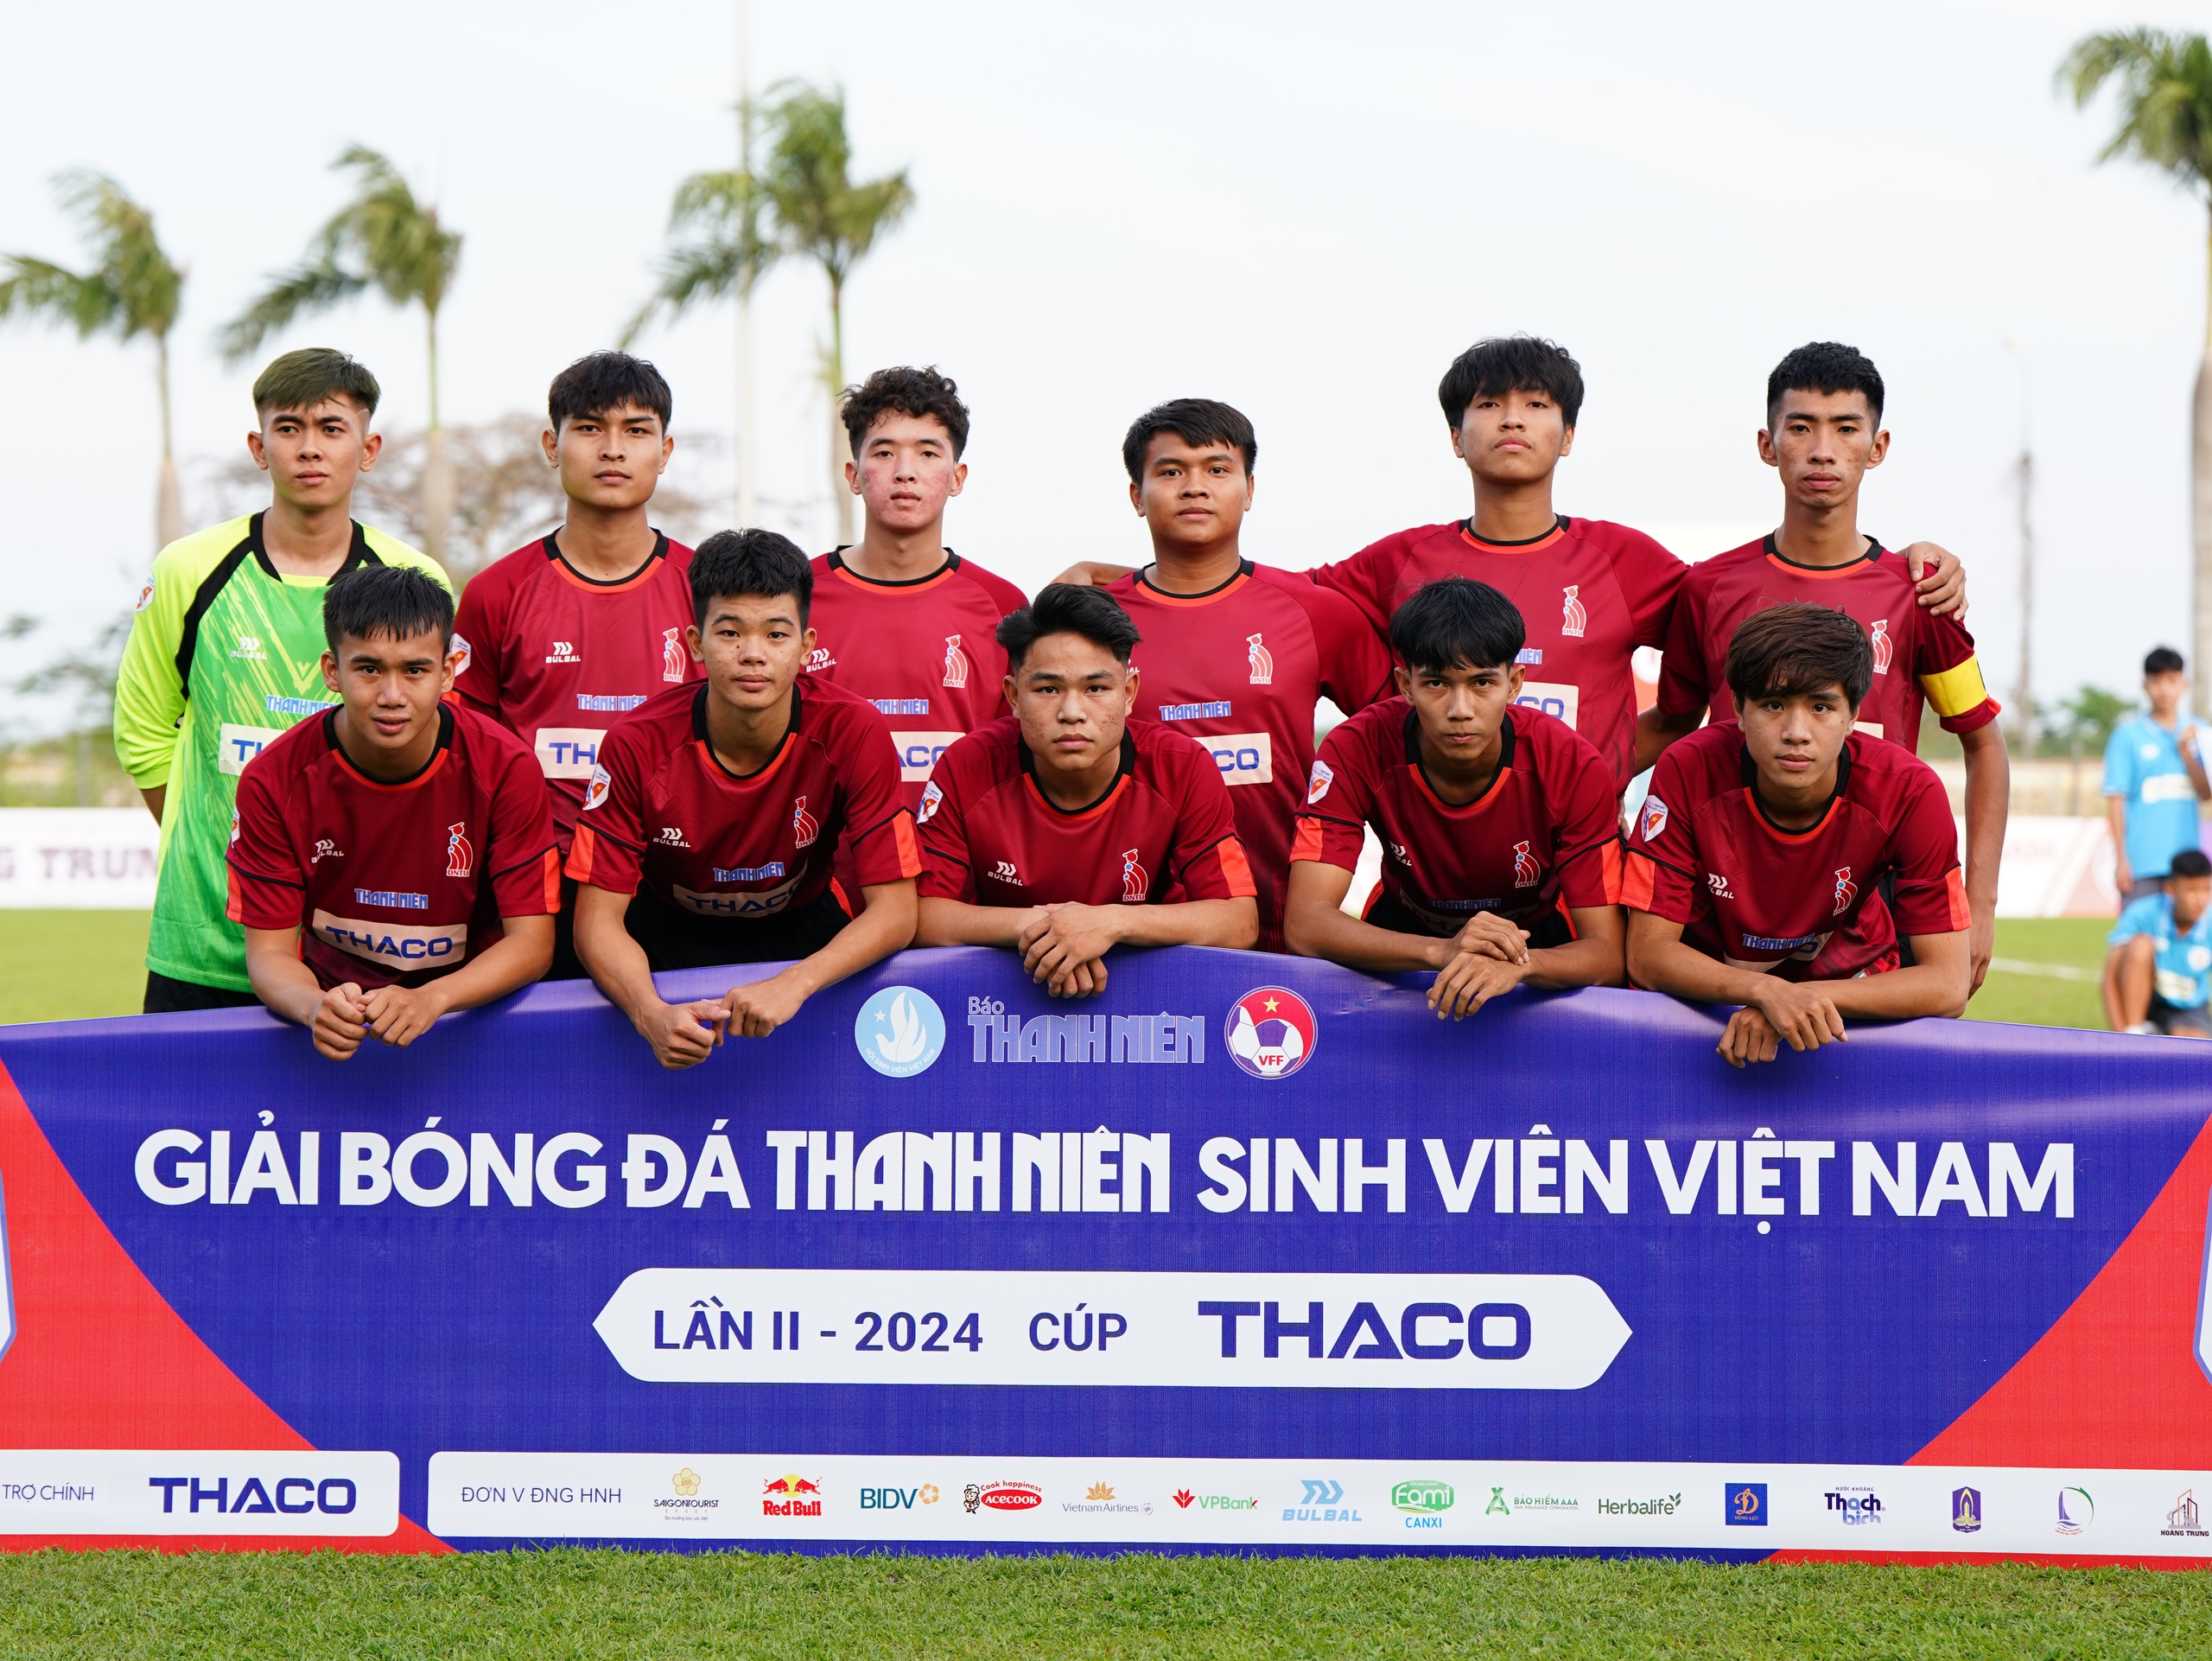 Đội bóng ở VCK: Trường ĐHCN Đồng Nai và tham vọng mô hình CLB bán chuyên- Ảnh 2.